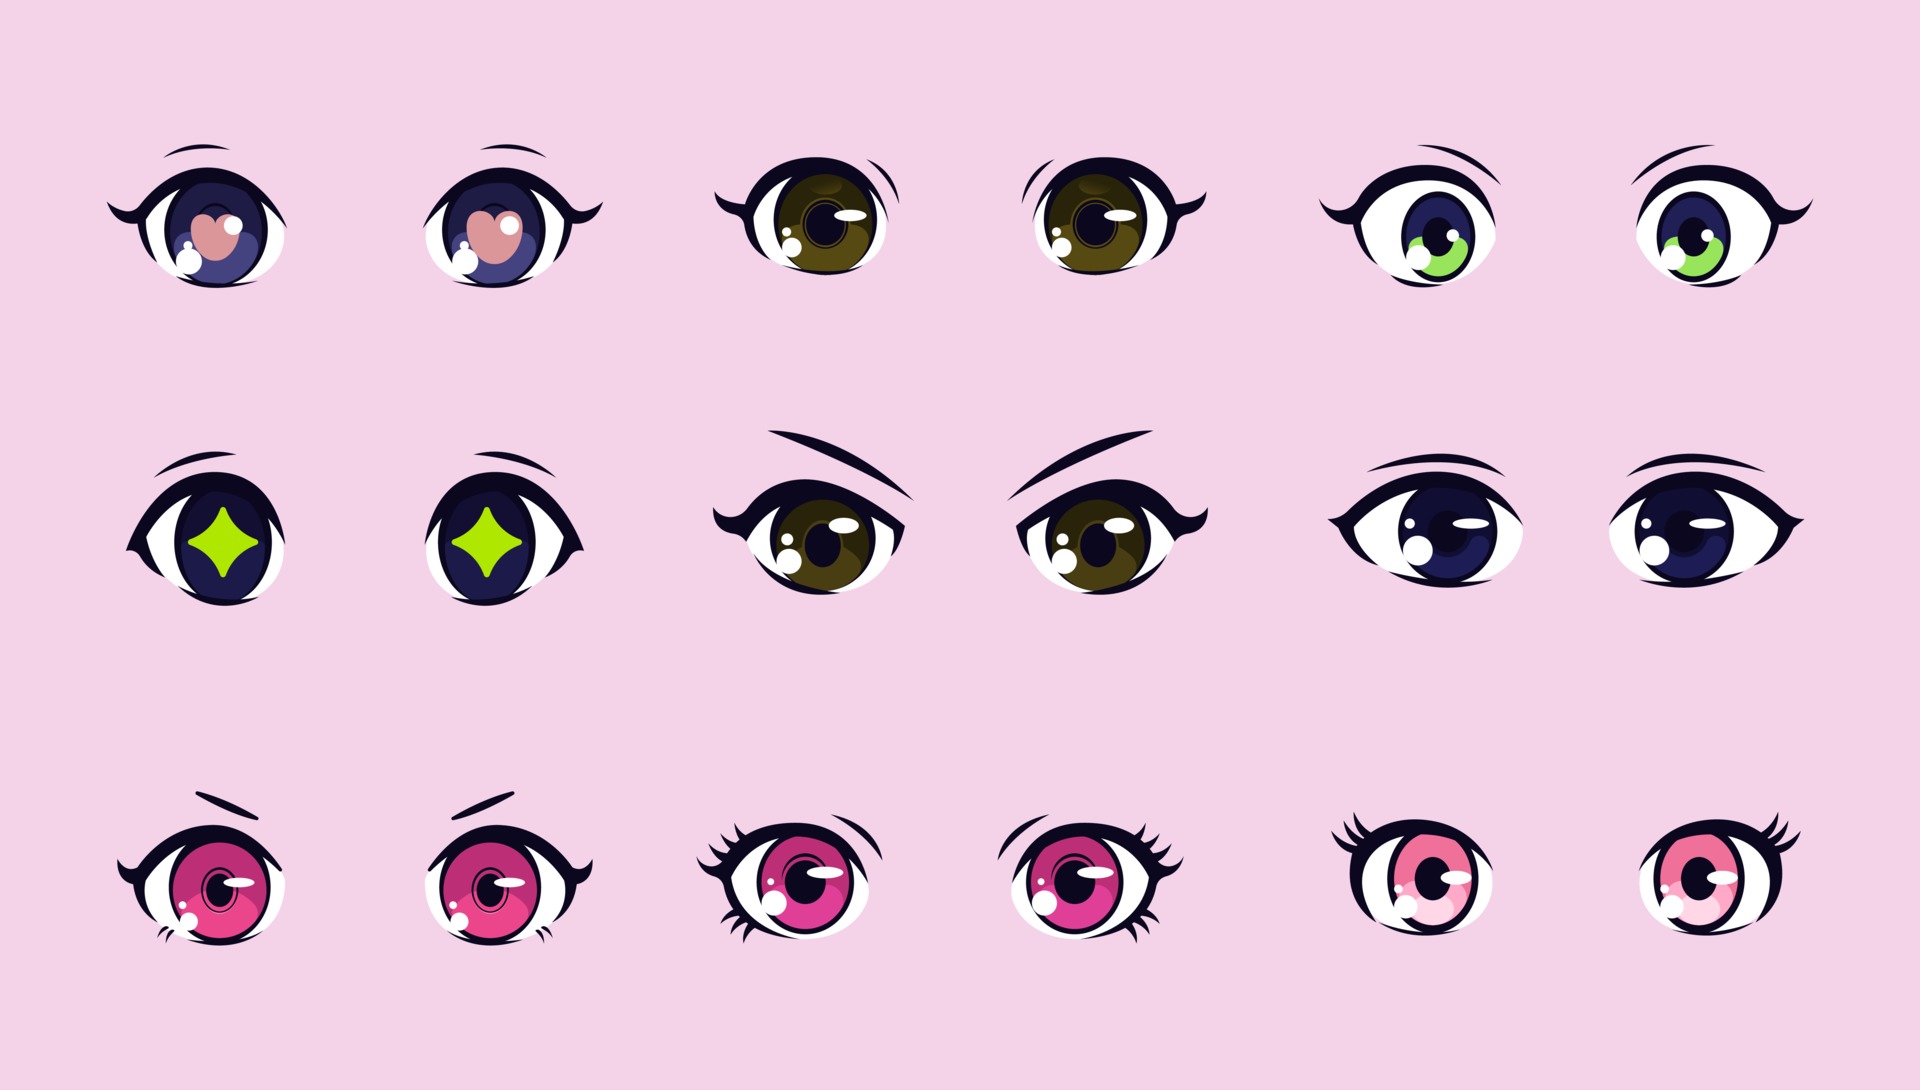 como desenhar: como desenhar olhos de mangá